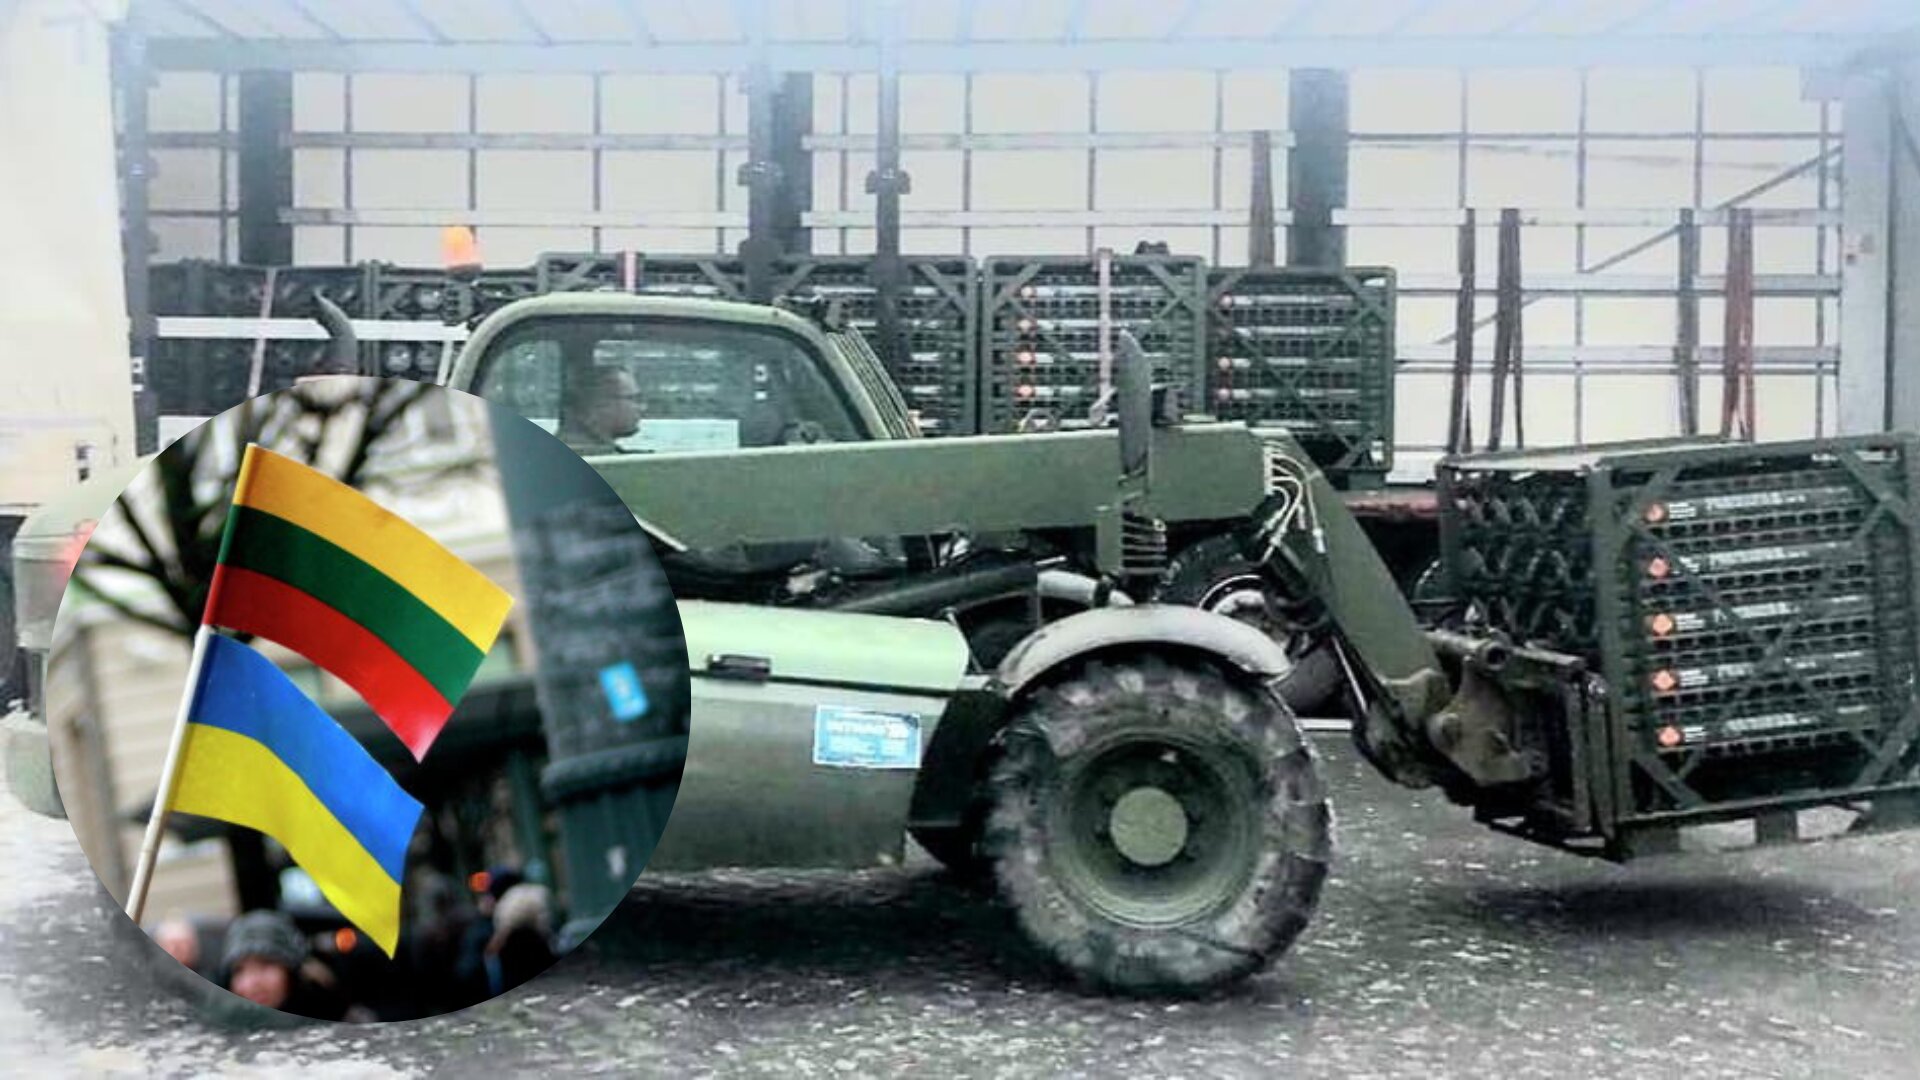 Влада Литви оголосила про передачу нової військової допомоги Україні для відбиття російської агресії. Йдеться про партію снарядів для артилерії ЗСУ.